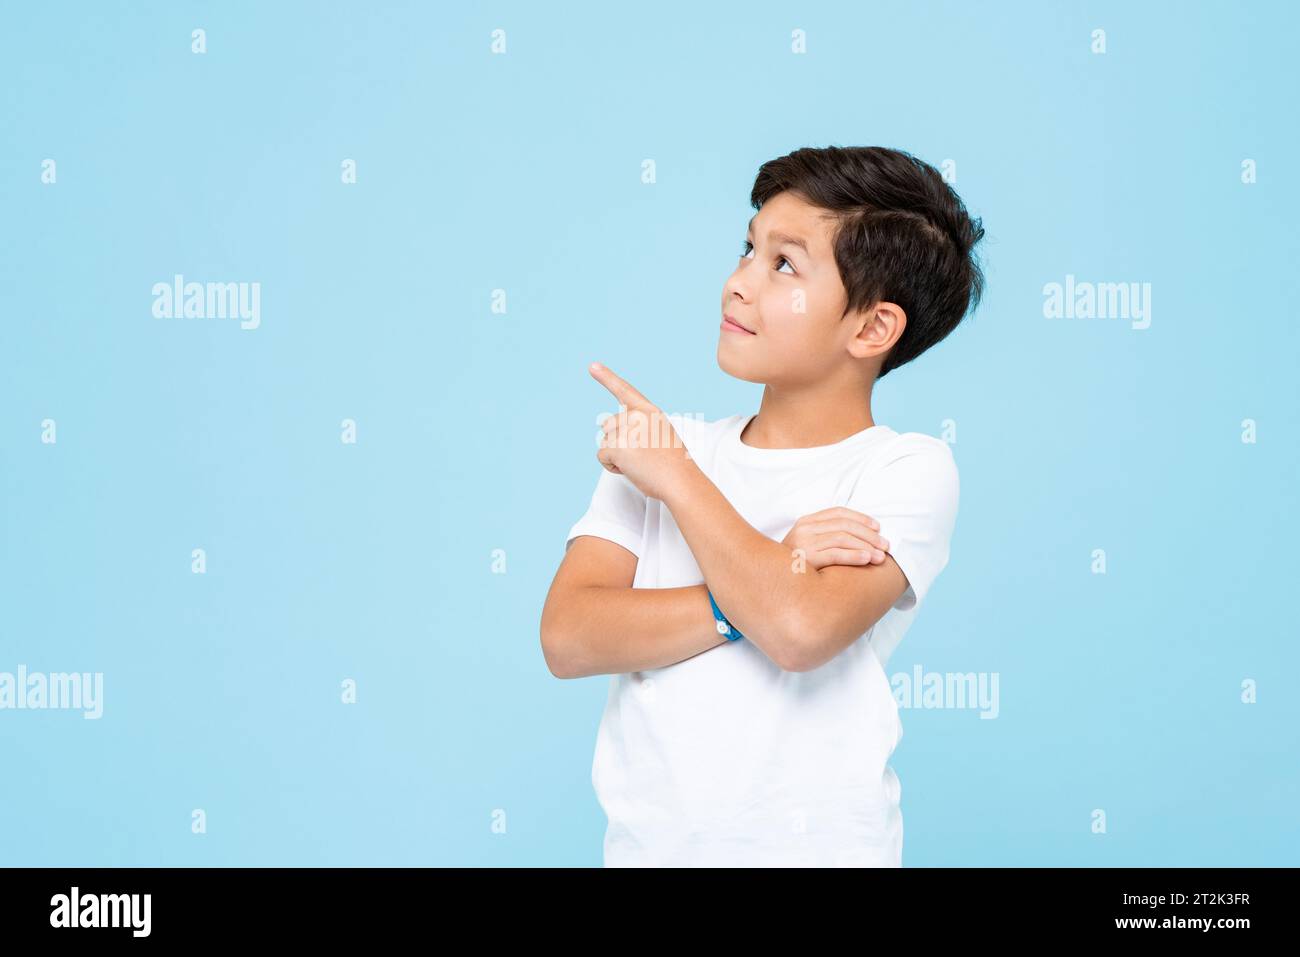 Simpatico ragazzo sorridente con una t-shirt bianca semplice che guarda e punta la mano verso l'alto su uno sfondo isolato di colore blu chiaro da studio Foto Stock